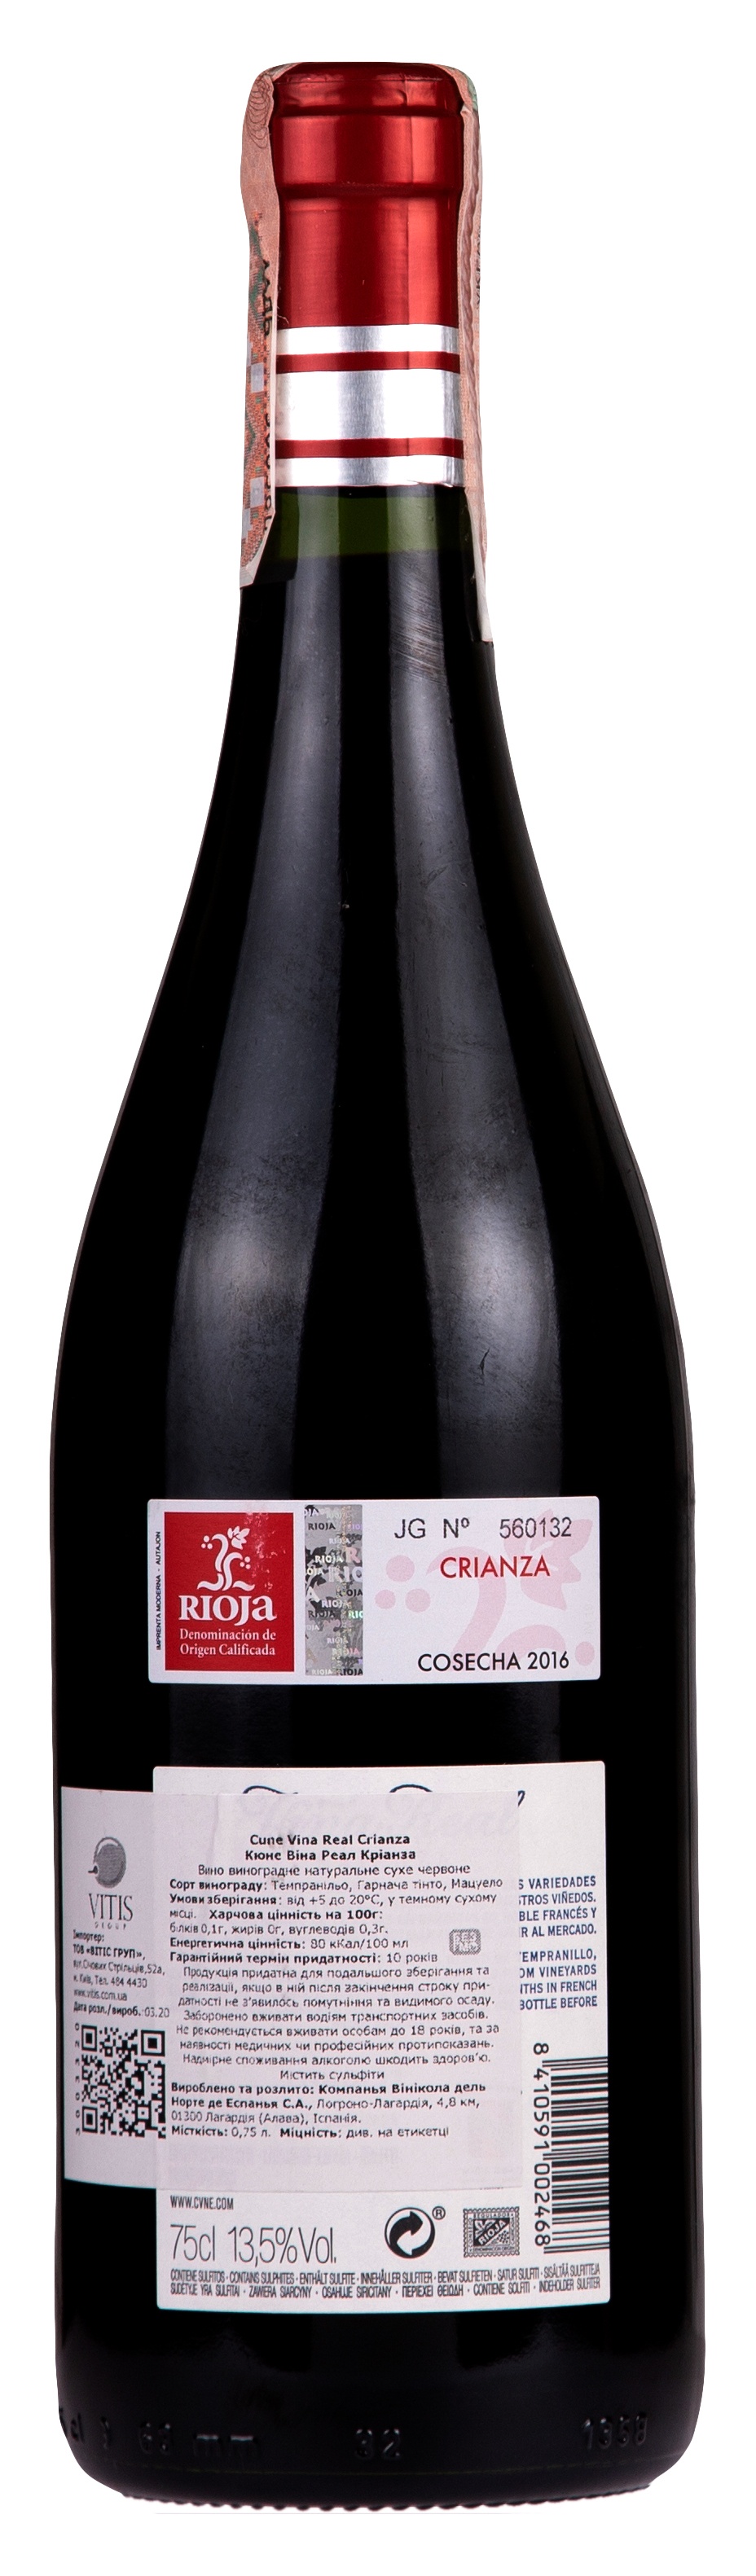 CVNE Vina Real Crianza 2016 Set 6 bottles - 2